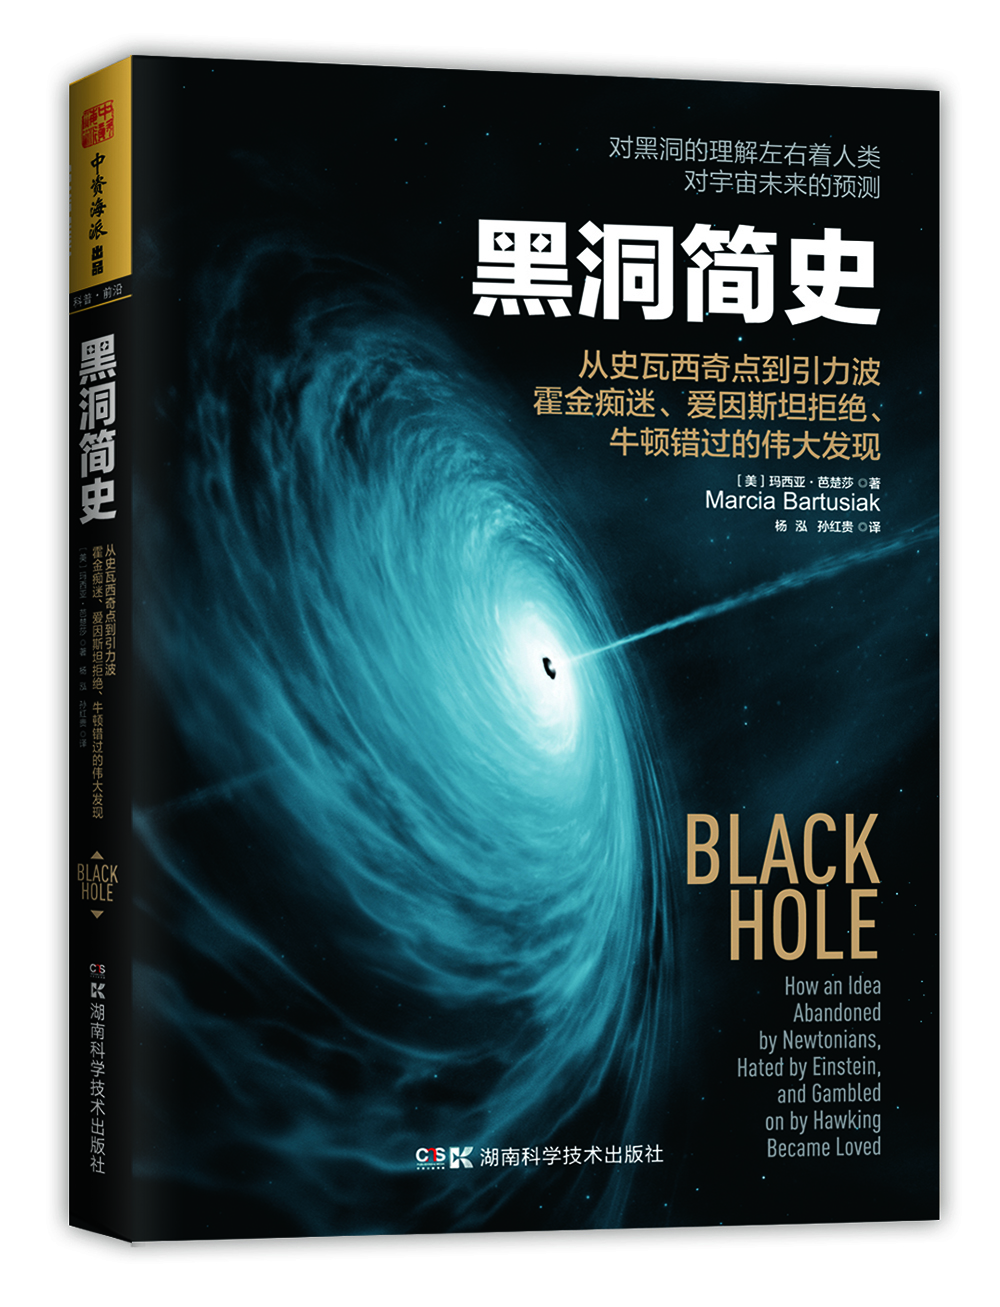 黑洞简史：从史瓦西奇点到引力波 霍金痴迷、爱因斯坦拒绝、牛顿错过的伟大发现  [Black Hole]